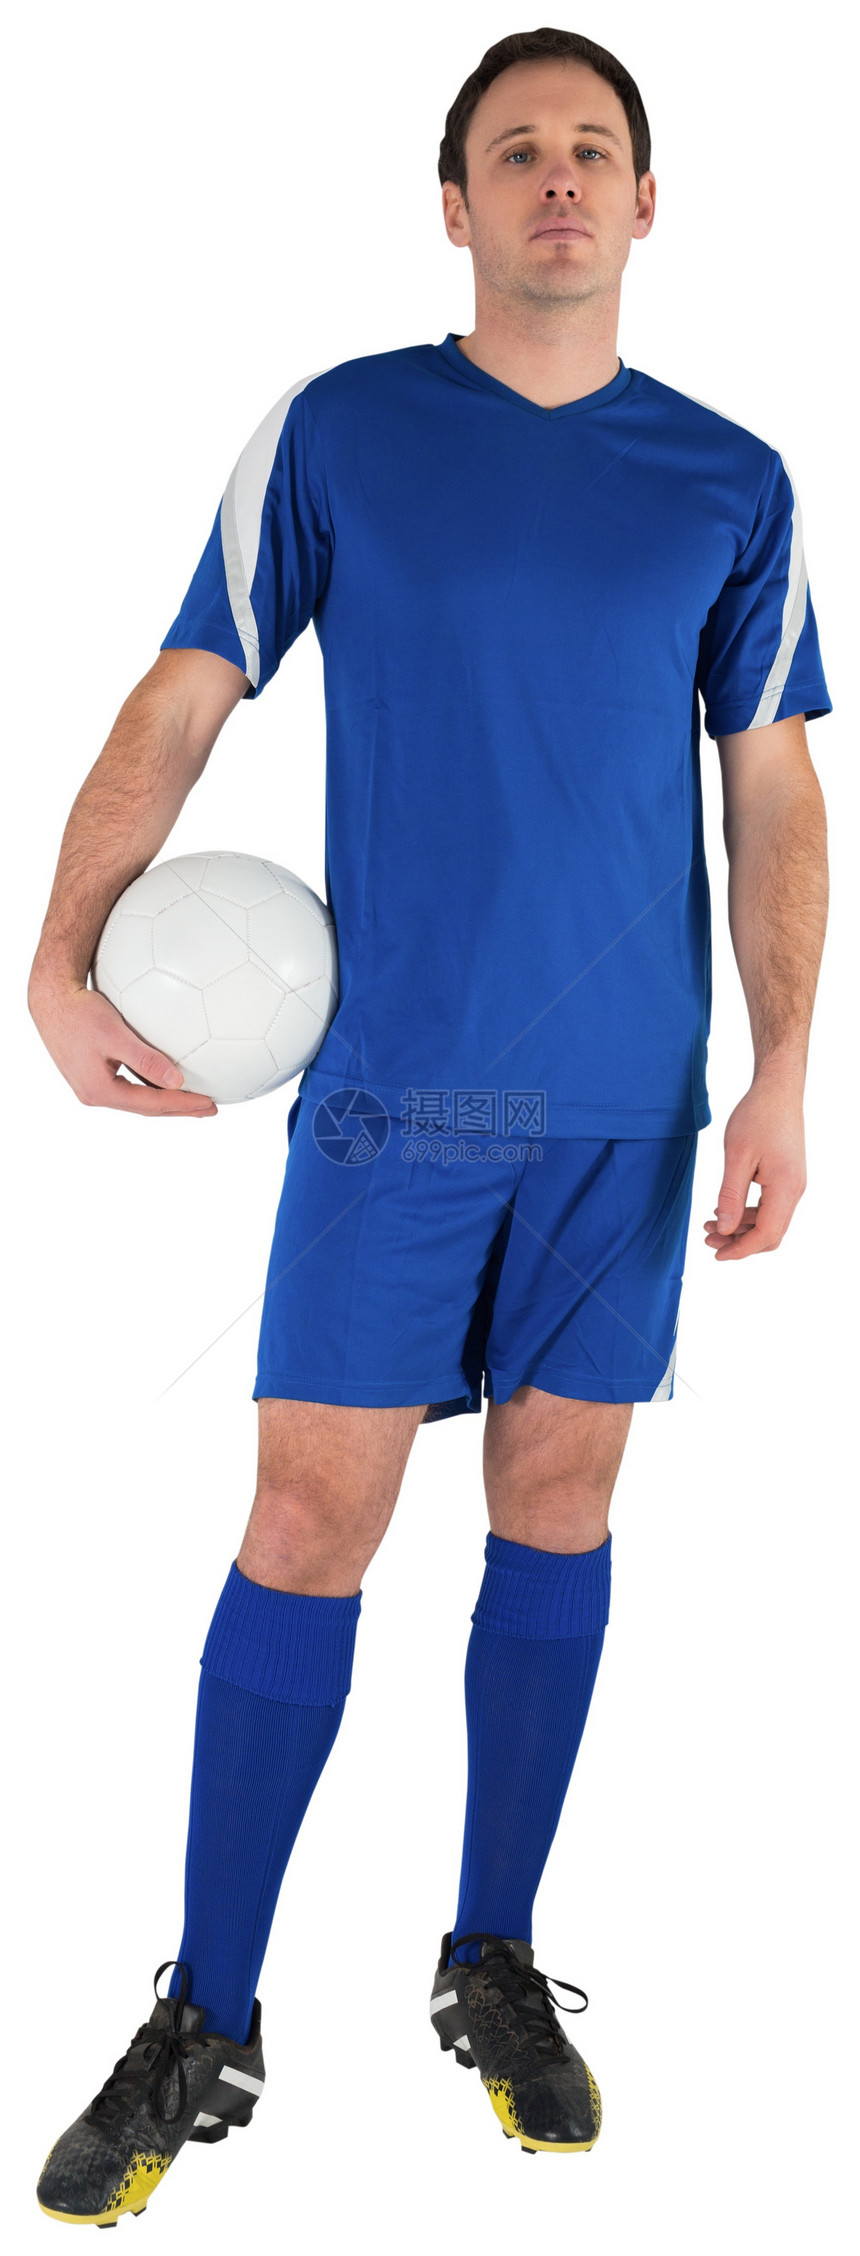 英俊的足球运动员握着球齿轮男性运动播放器蓝色活动男人运动服图片